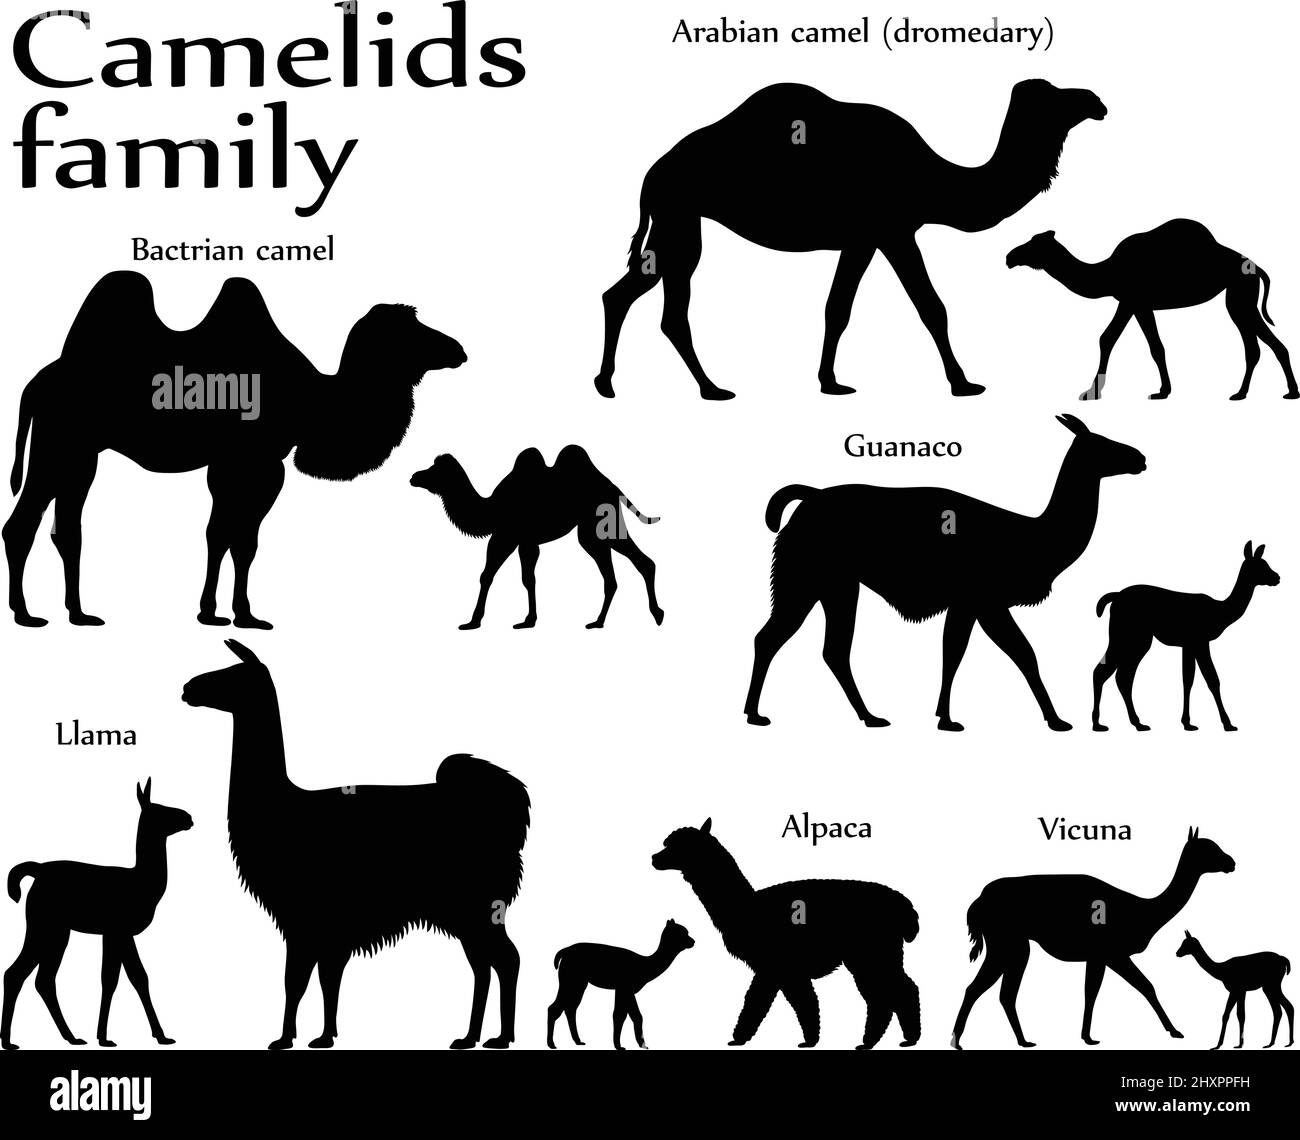 Sammlung von verschiedenen Säugetierarten der Kamelfamilie, Erwachsenen und Jungen, in Silhouette: baktrian Kamel, arabian Kamel (Dromedar), Lama, Alpaka, Stock Vektor